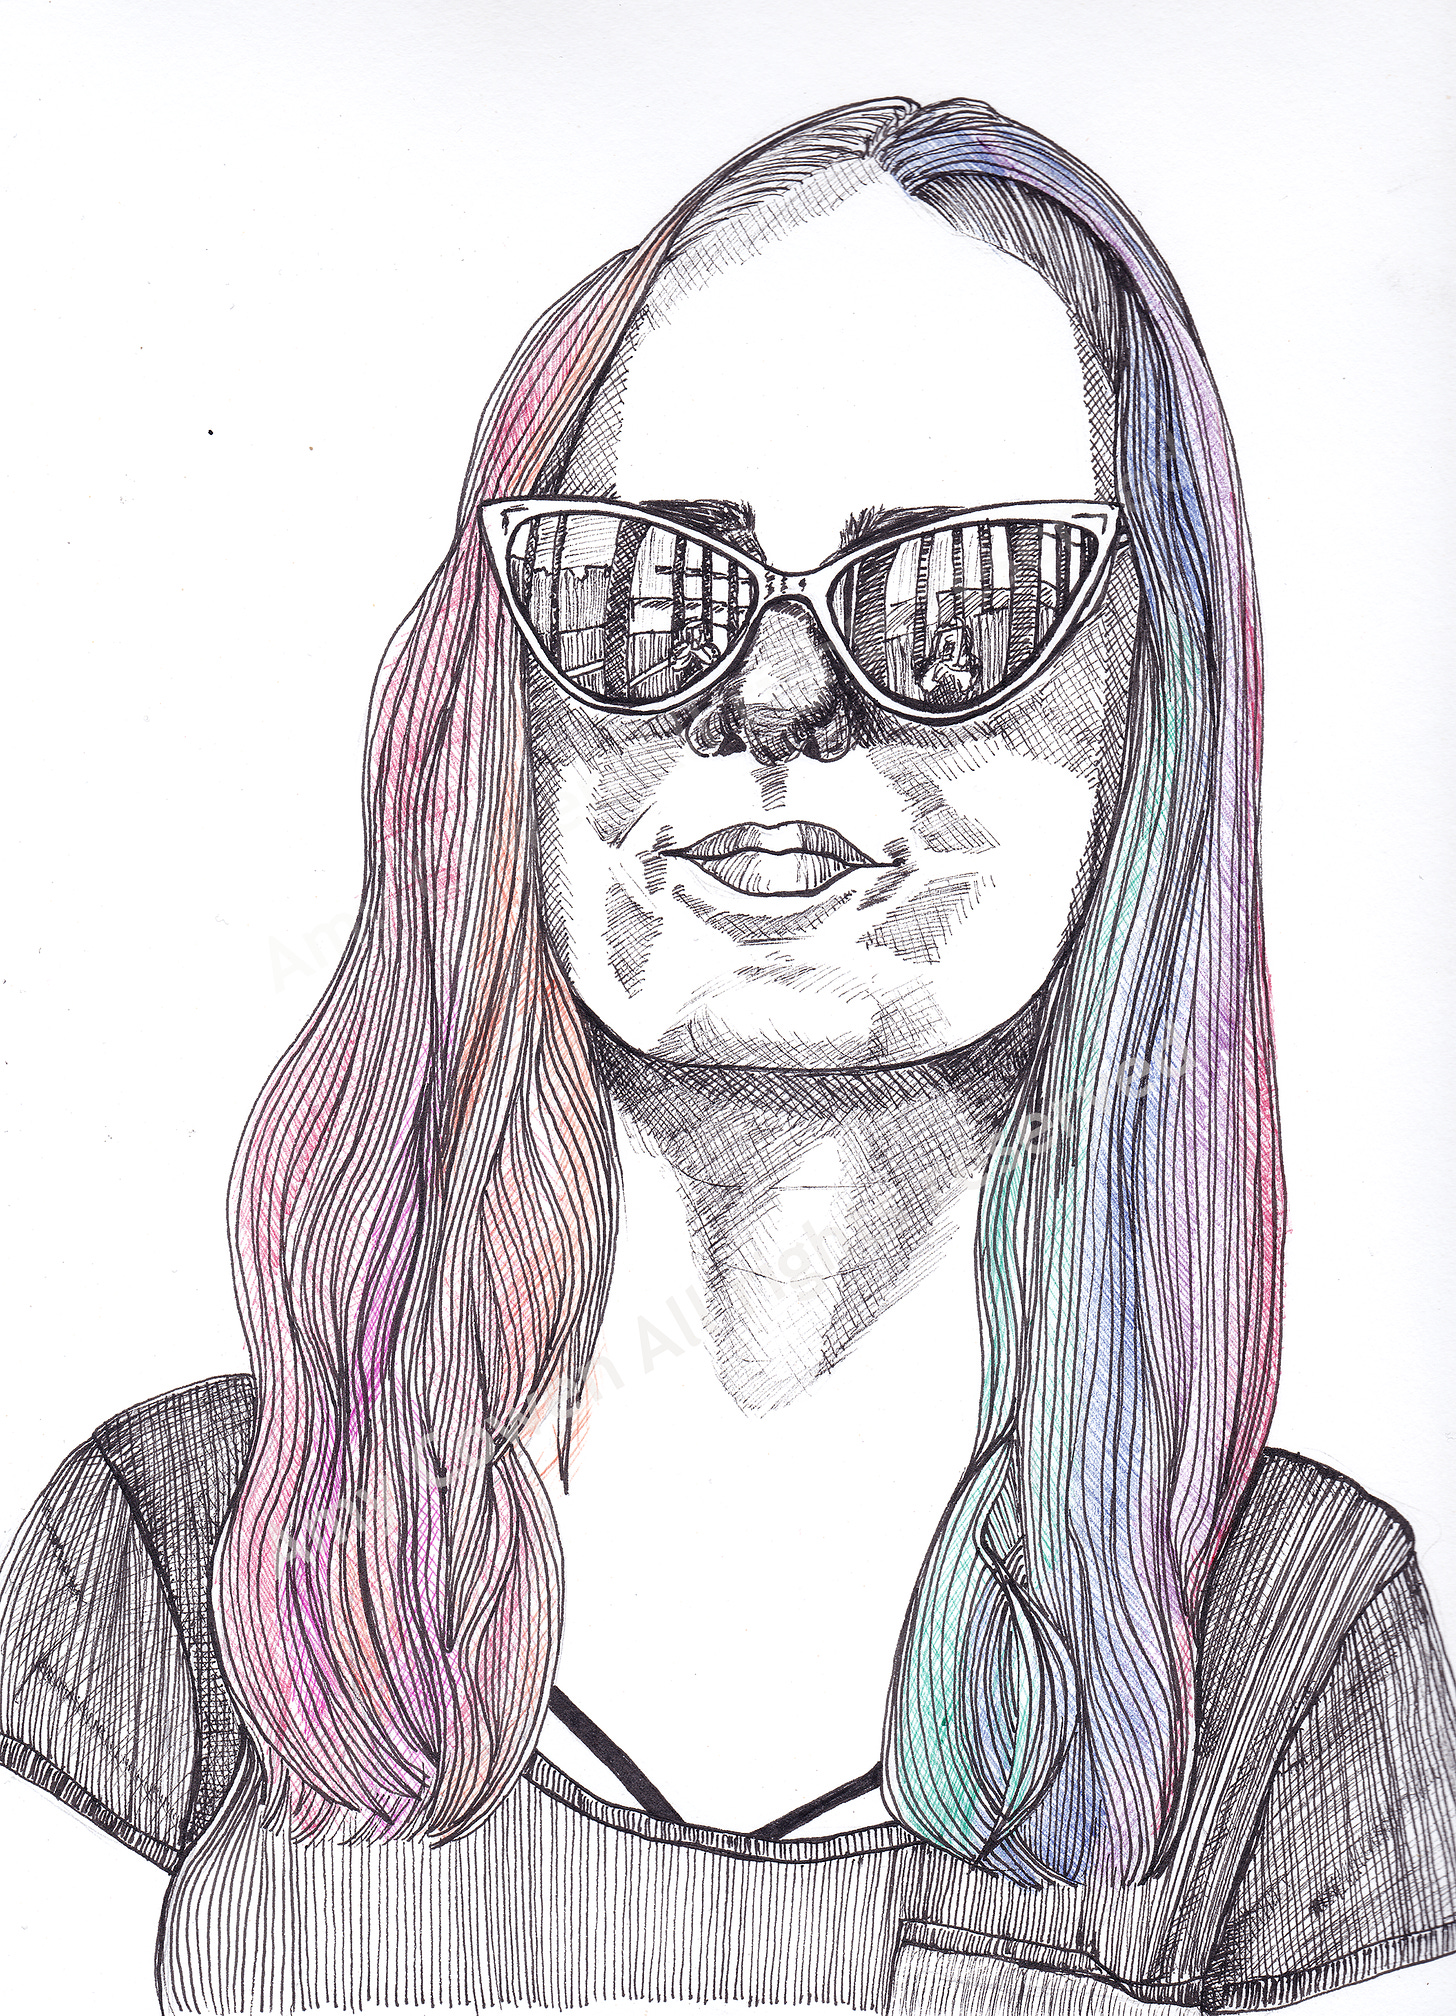 [Rainbow hair drawing, A. Cowen]